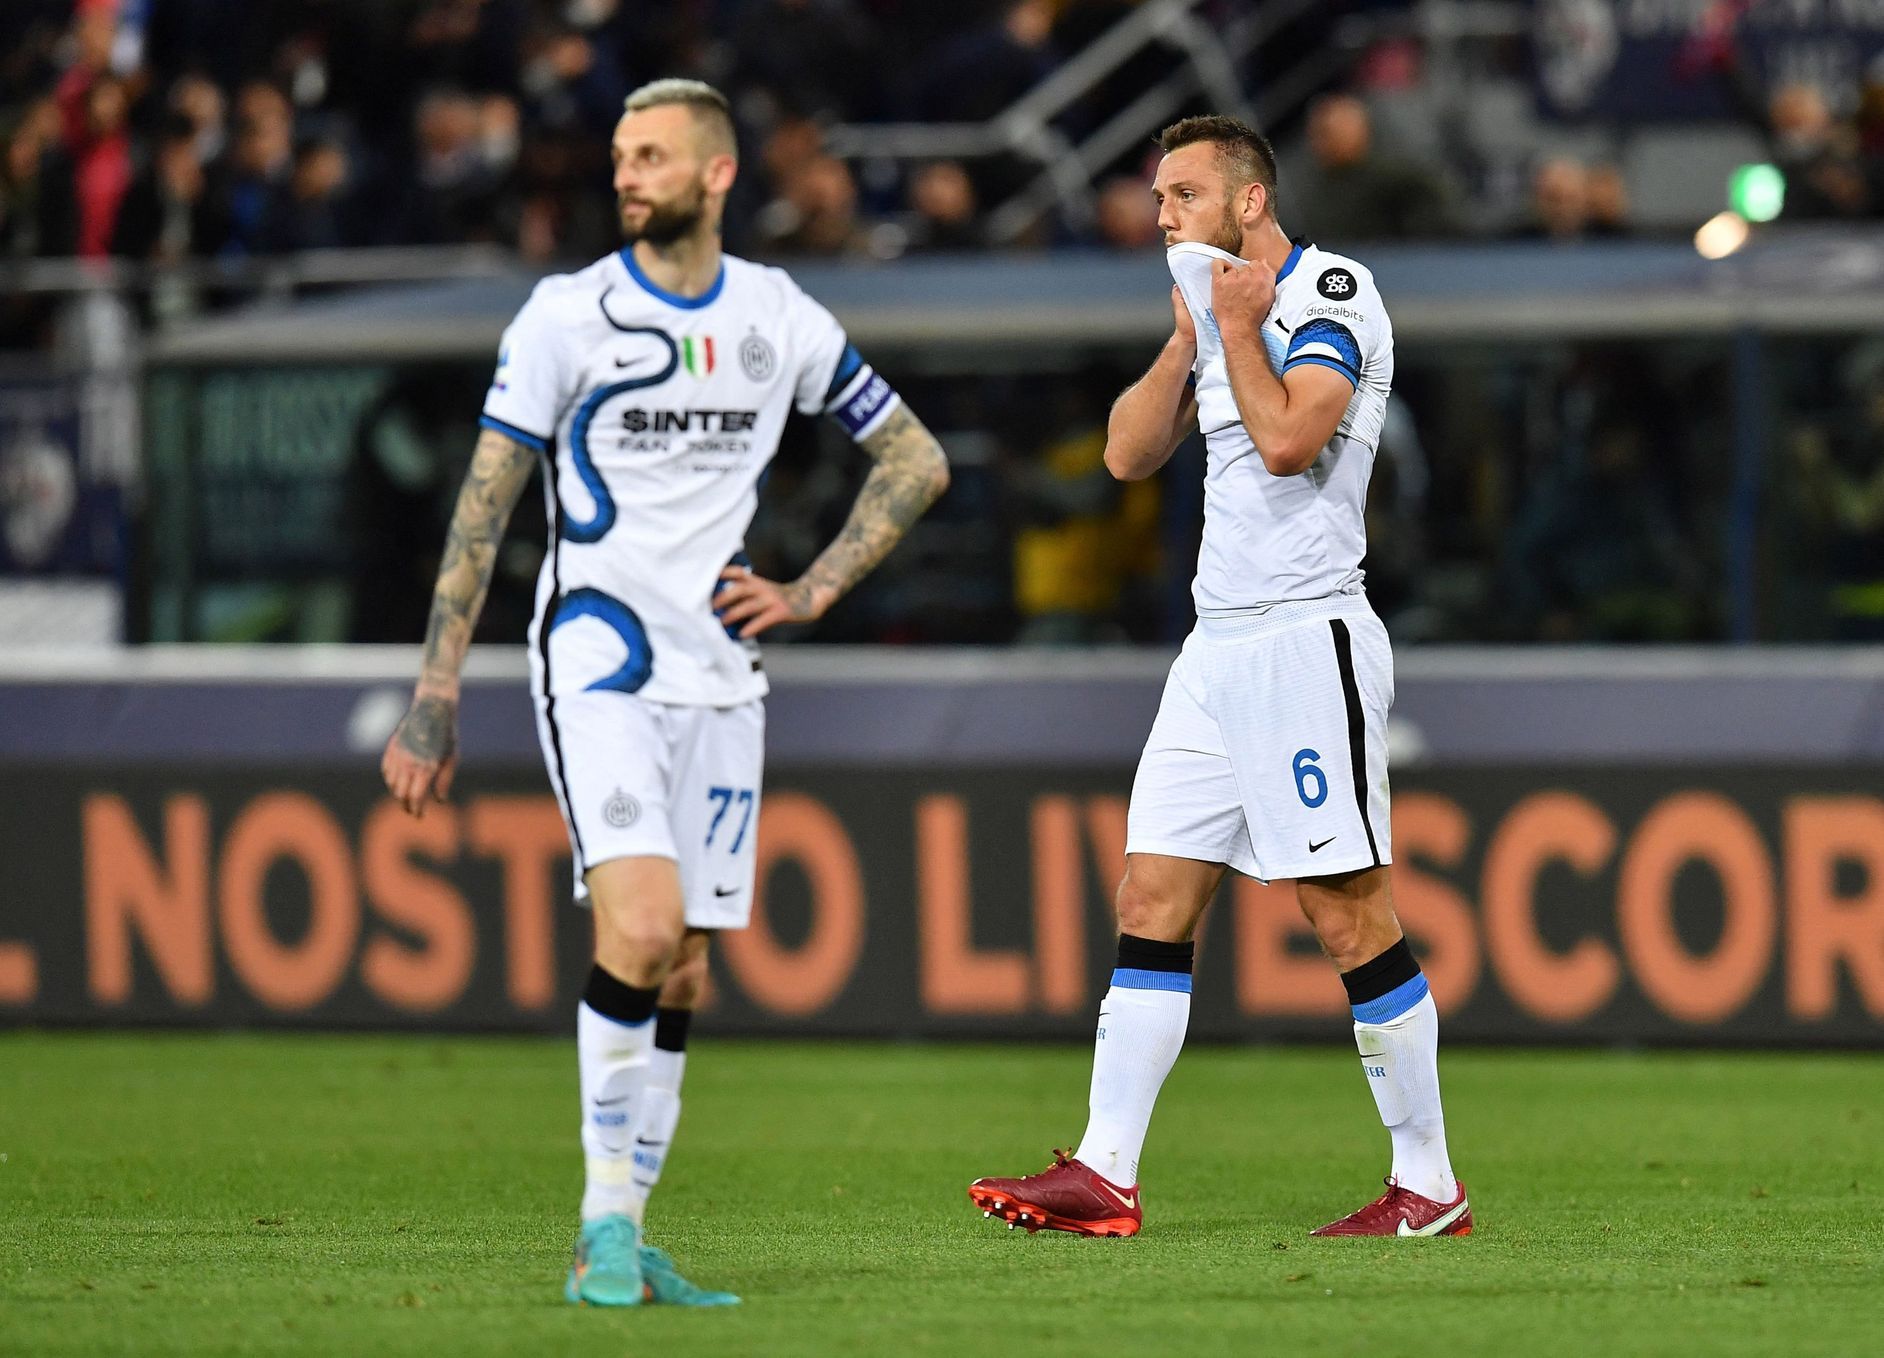 Inter sconfitta a sorpresa contro il Bologna, l’Atalanta pareggia ai rigori per mano di Zim